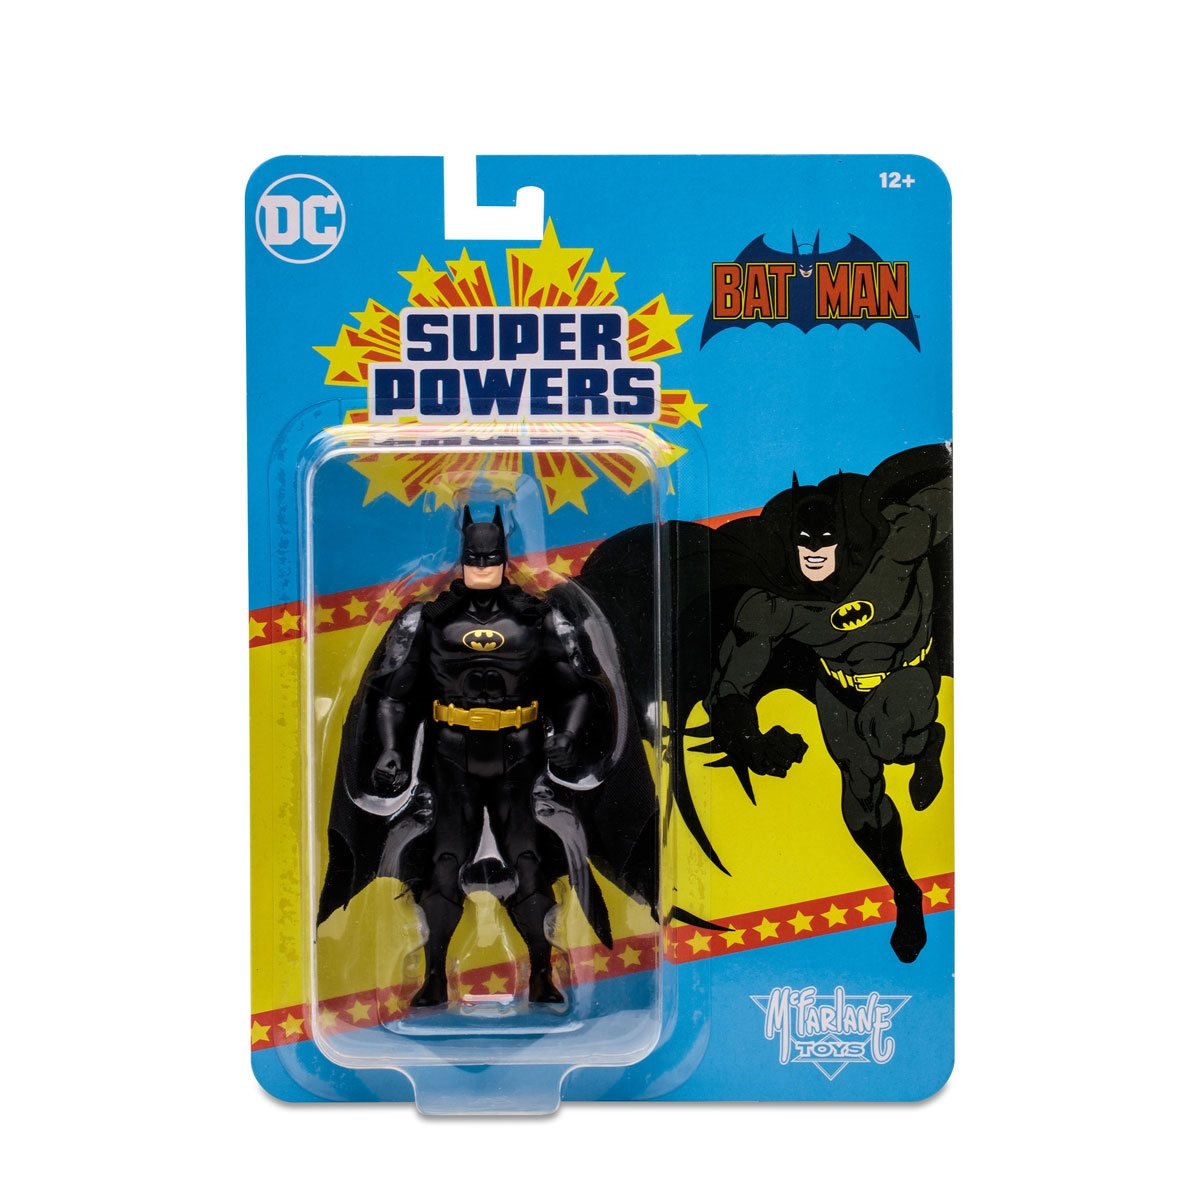 MCFARLANE DC Super Powers Wave 5 Batman Black Suit Variant 4-Inch 